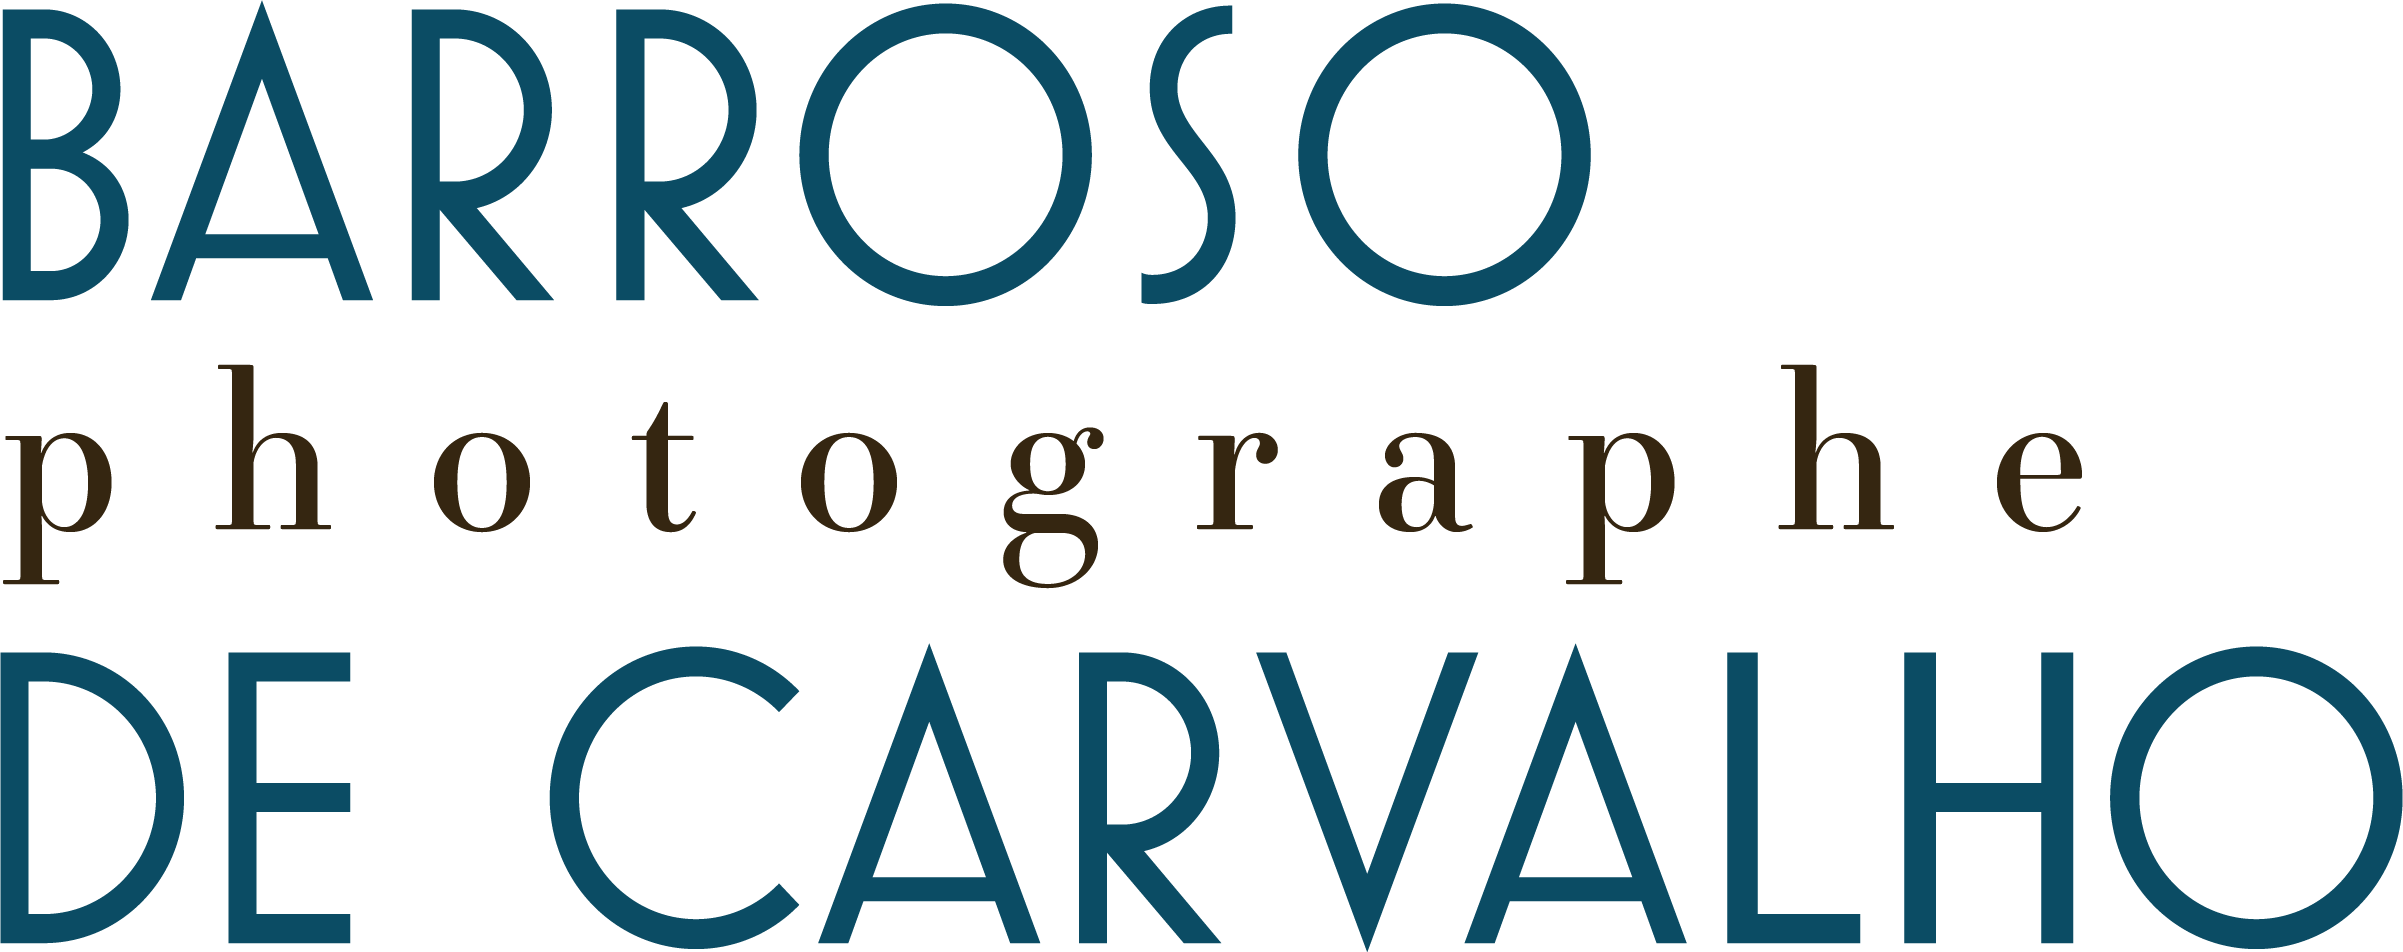 Barroso de Carvalho | Photographe à Blois - Reportage Entreprise , Événementiel, Packshot, Publicitaire